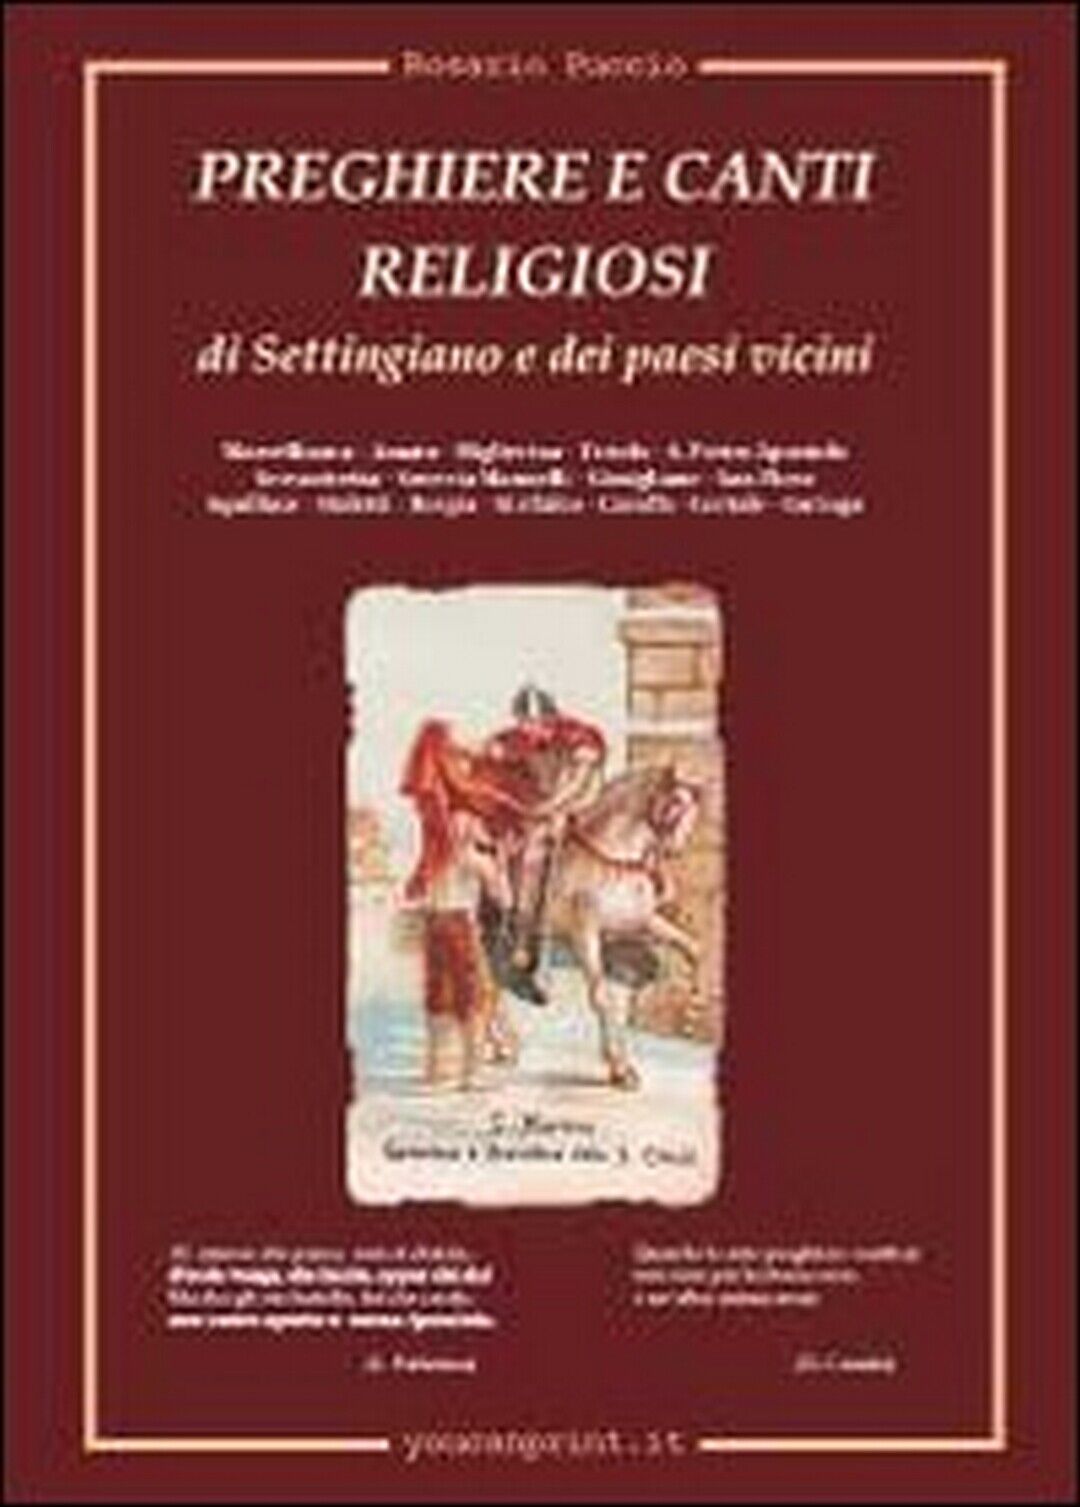 Preghiere e canti religiosi di Settingiano e dei paesi vicini  di Rosario Puccio libro usato